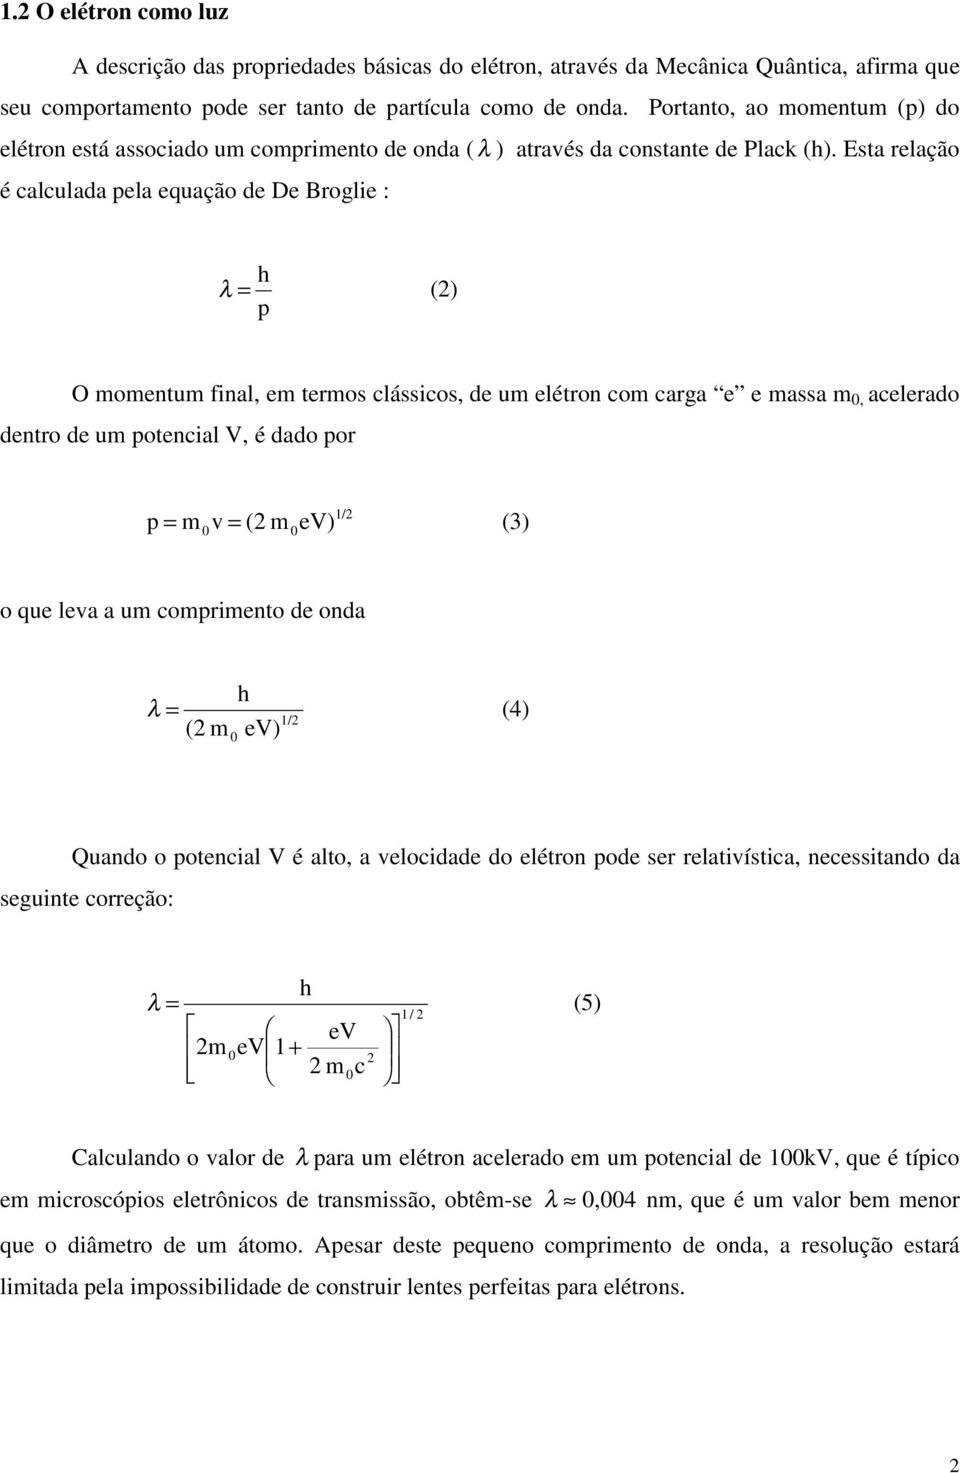 Esta relação é calculada pela equação de De Broglie : h λ = (2) p O momentum final, em termos clássicos, de um elétron com carga e e massa m 0, acelerado dentro de um potencial V, é dado por p = 1/2